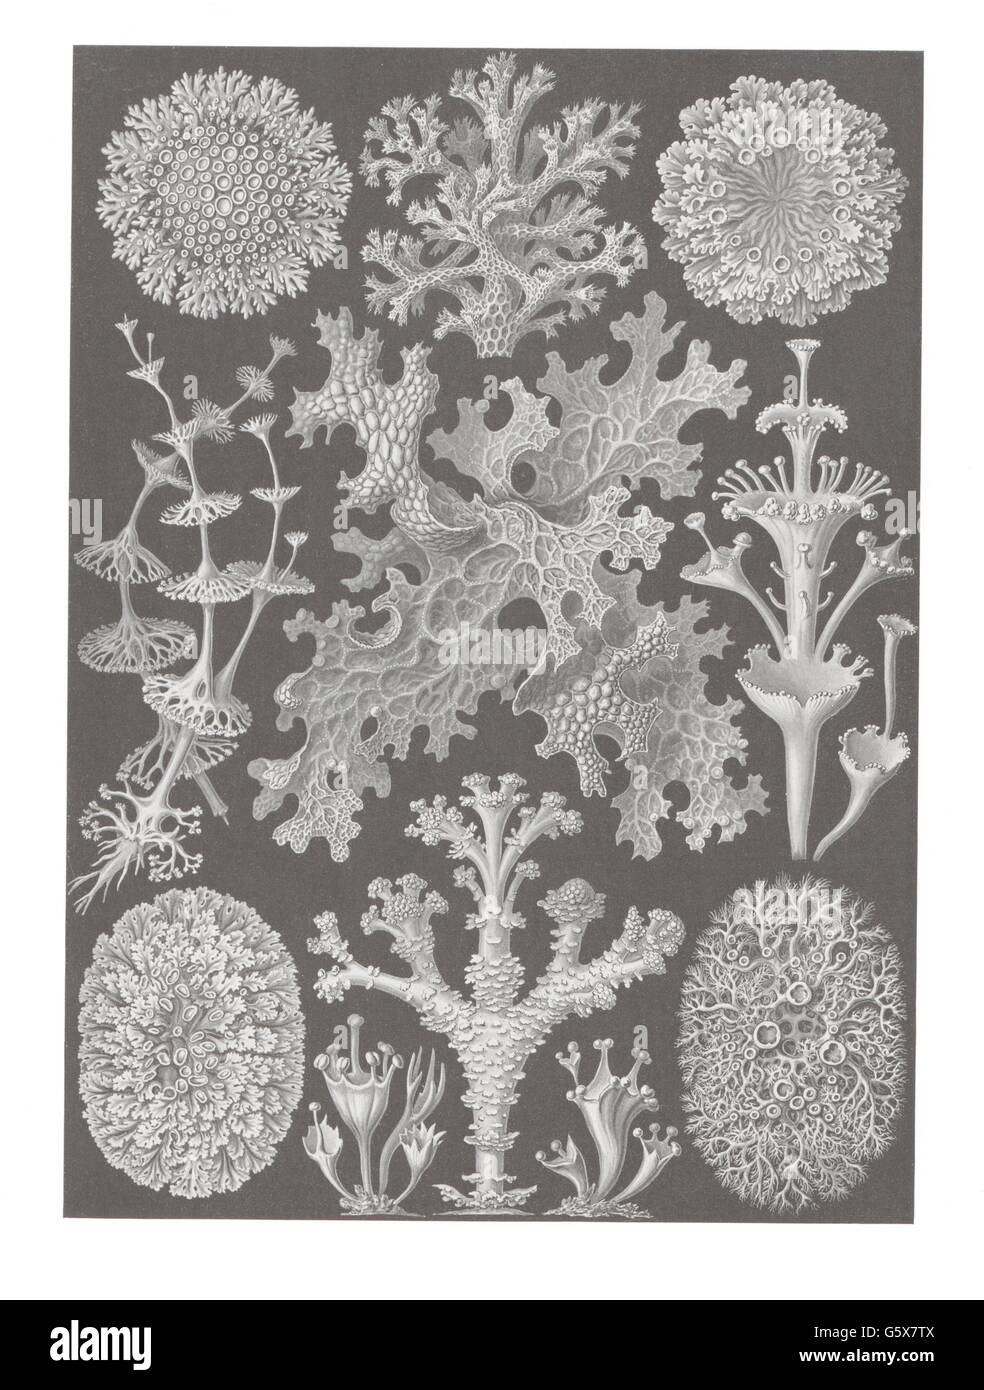 botanik, Flechten (Lichenes), Farblithographie, aus: Ernst Haeckel, 'Kunstformen der Natur', Leipzig - Wien, 1899 - 1904, Additional-Rights-Clearences-not available Stockfoto